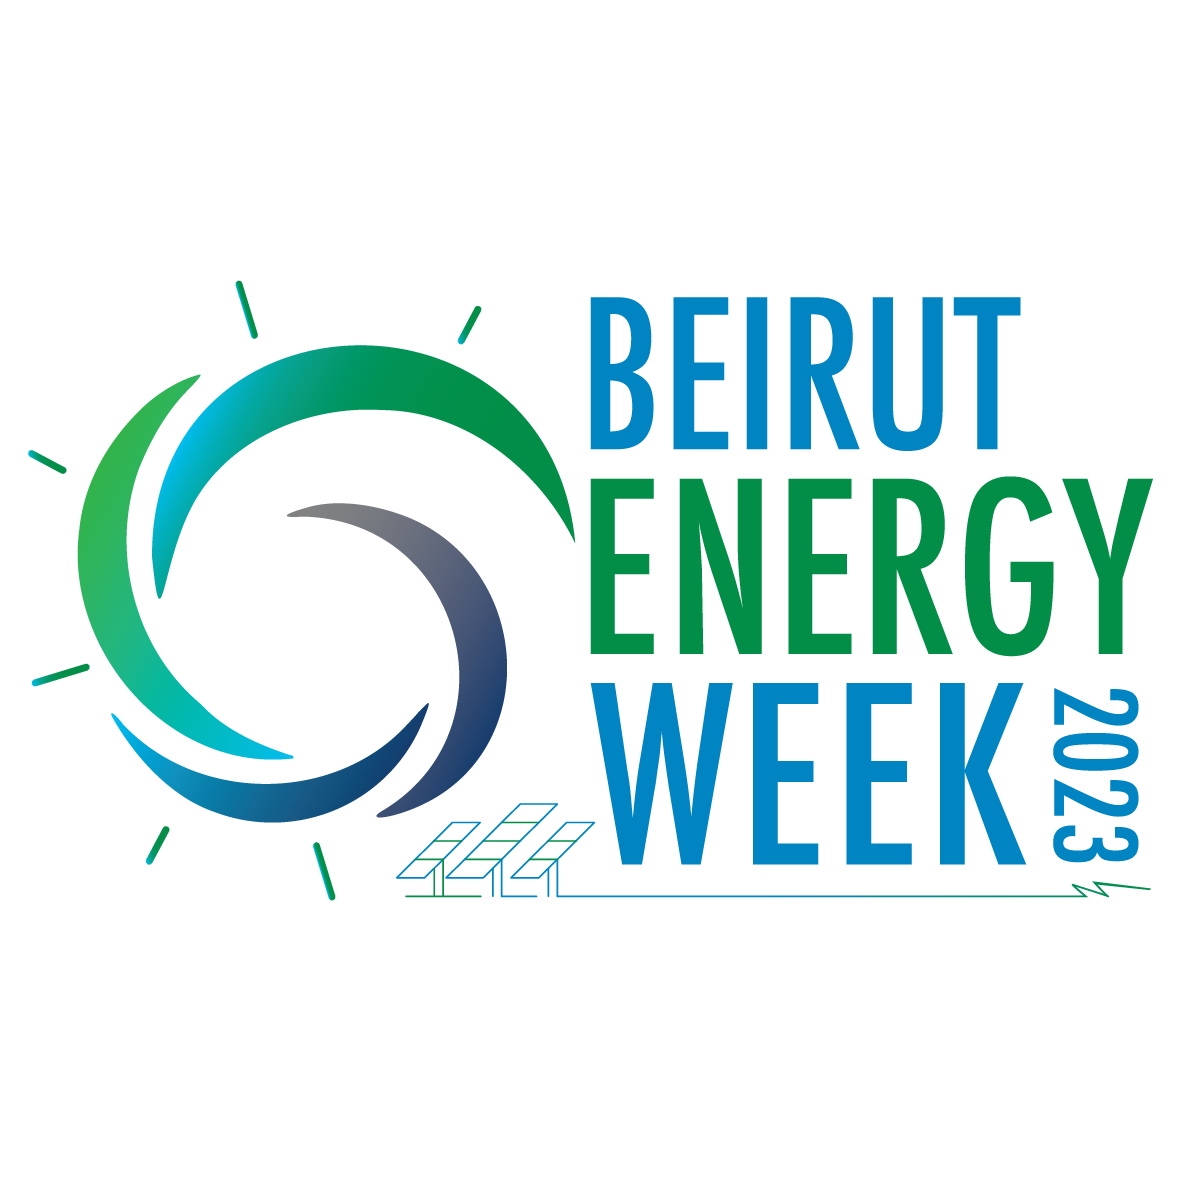 BEIRUT ENERGY WEEK